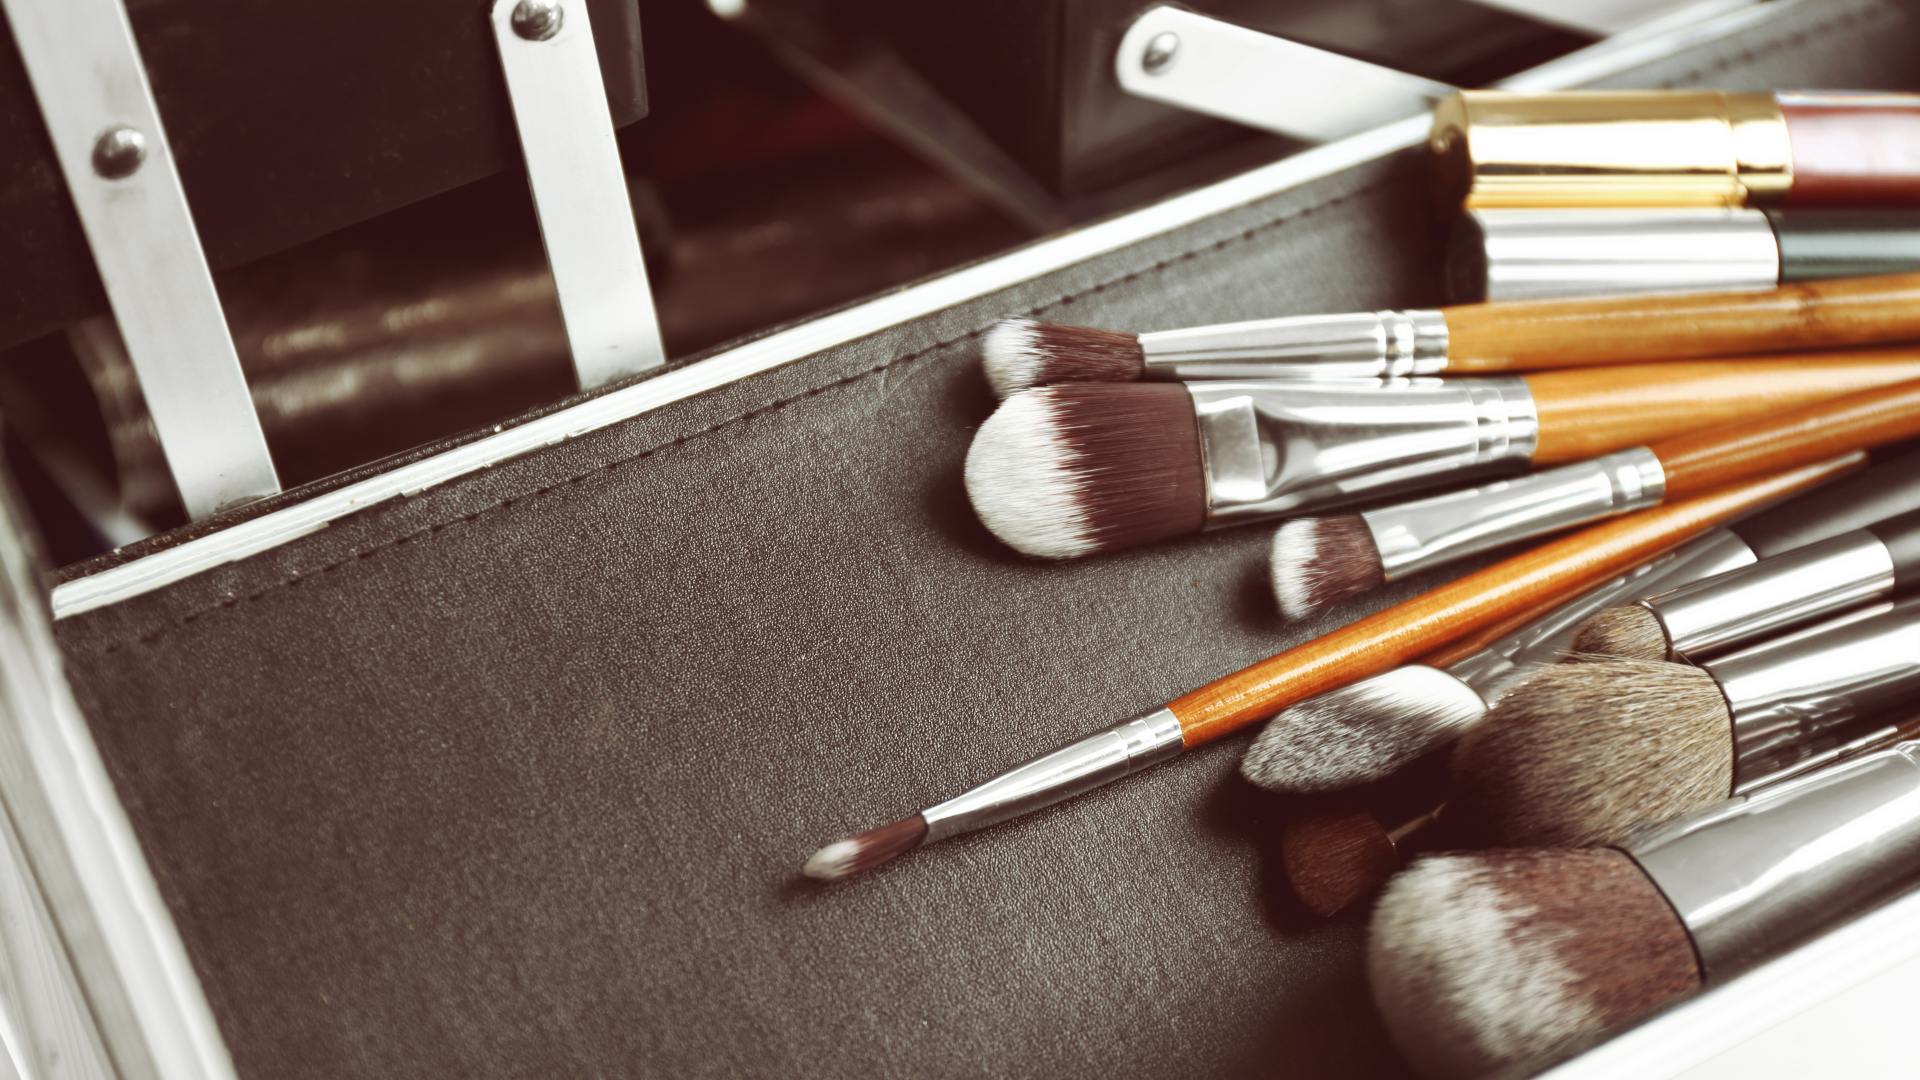 Melhores Kits de Pincéis de Maquiagem: 10 Ótimas Opções